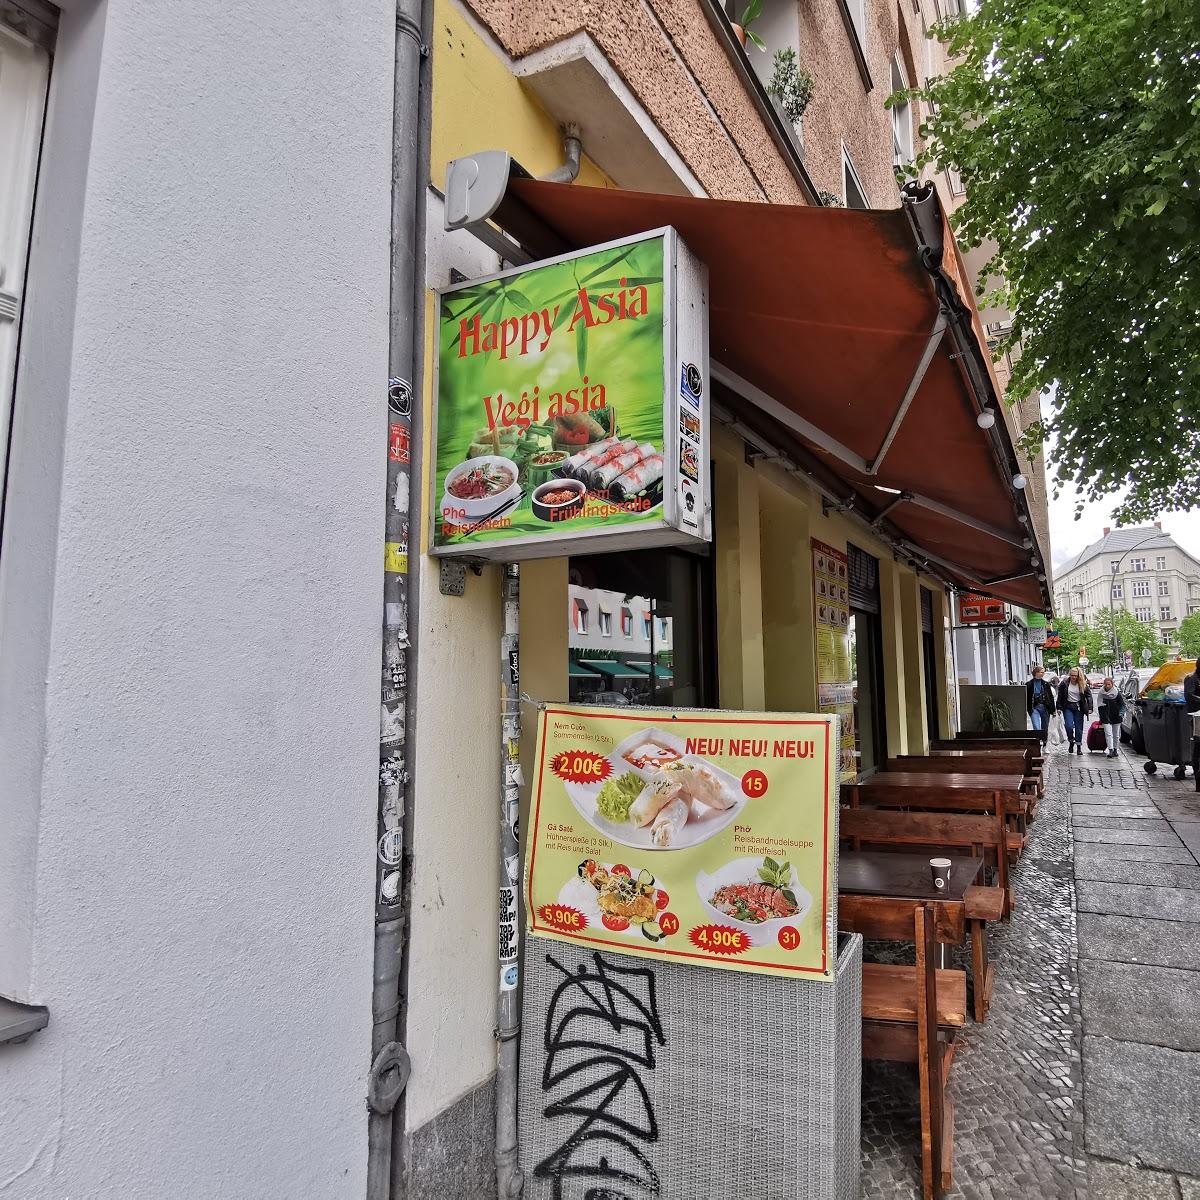 Restaurant "Happy Asia" in Berlin